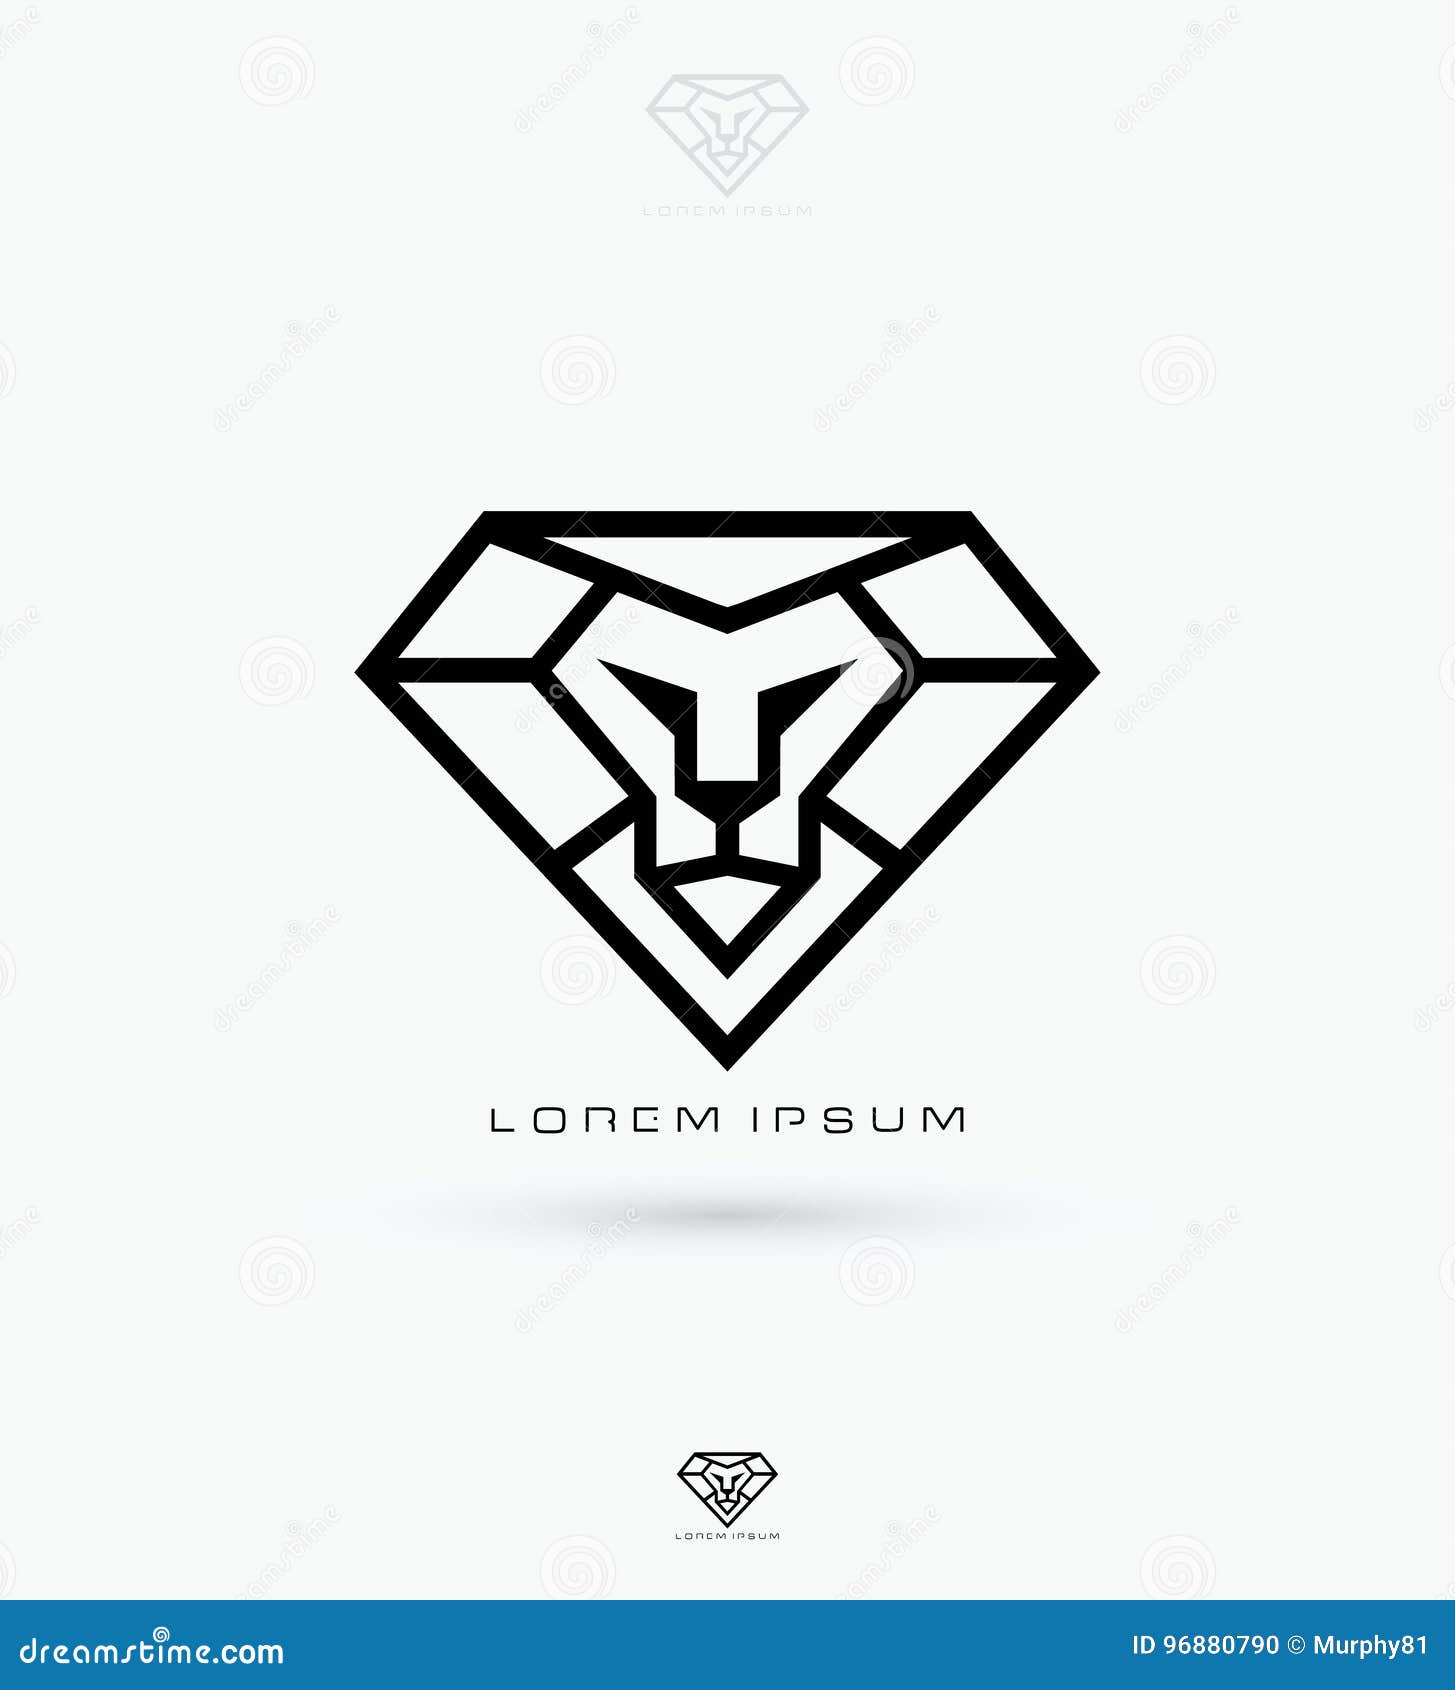 Ilustração geométrica da forma do diamante do logotipo inicial limpo